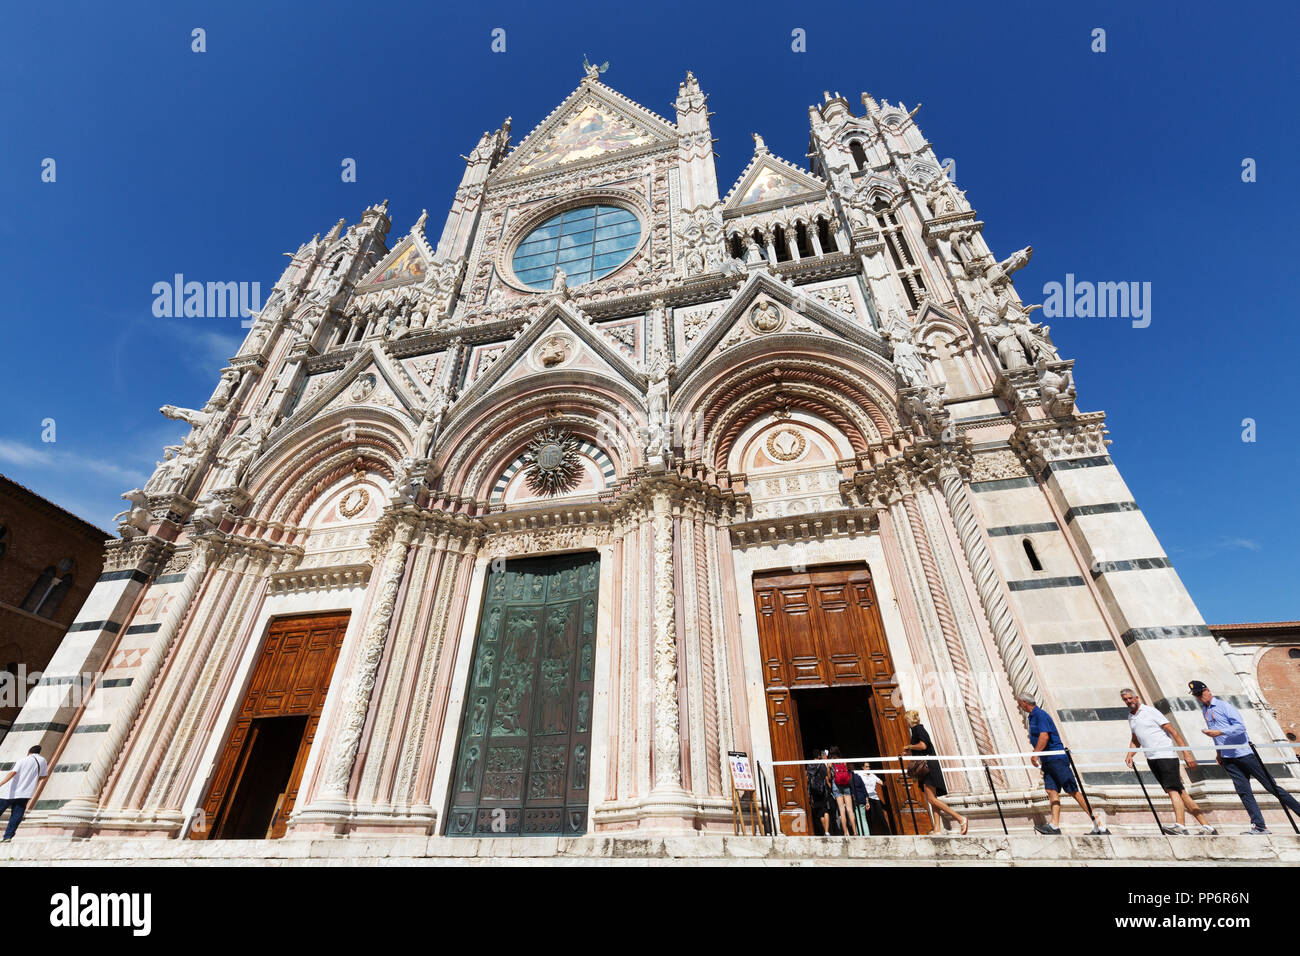 La Cathédrale de Sienne, ou Duomo Sienne, extérieur, Siena, Italie Europe Banque D'Images